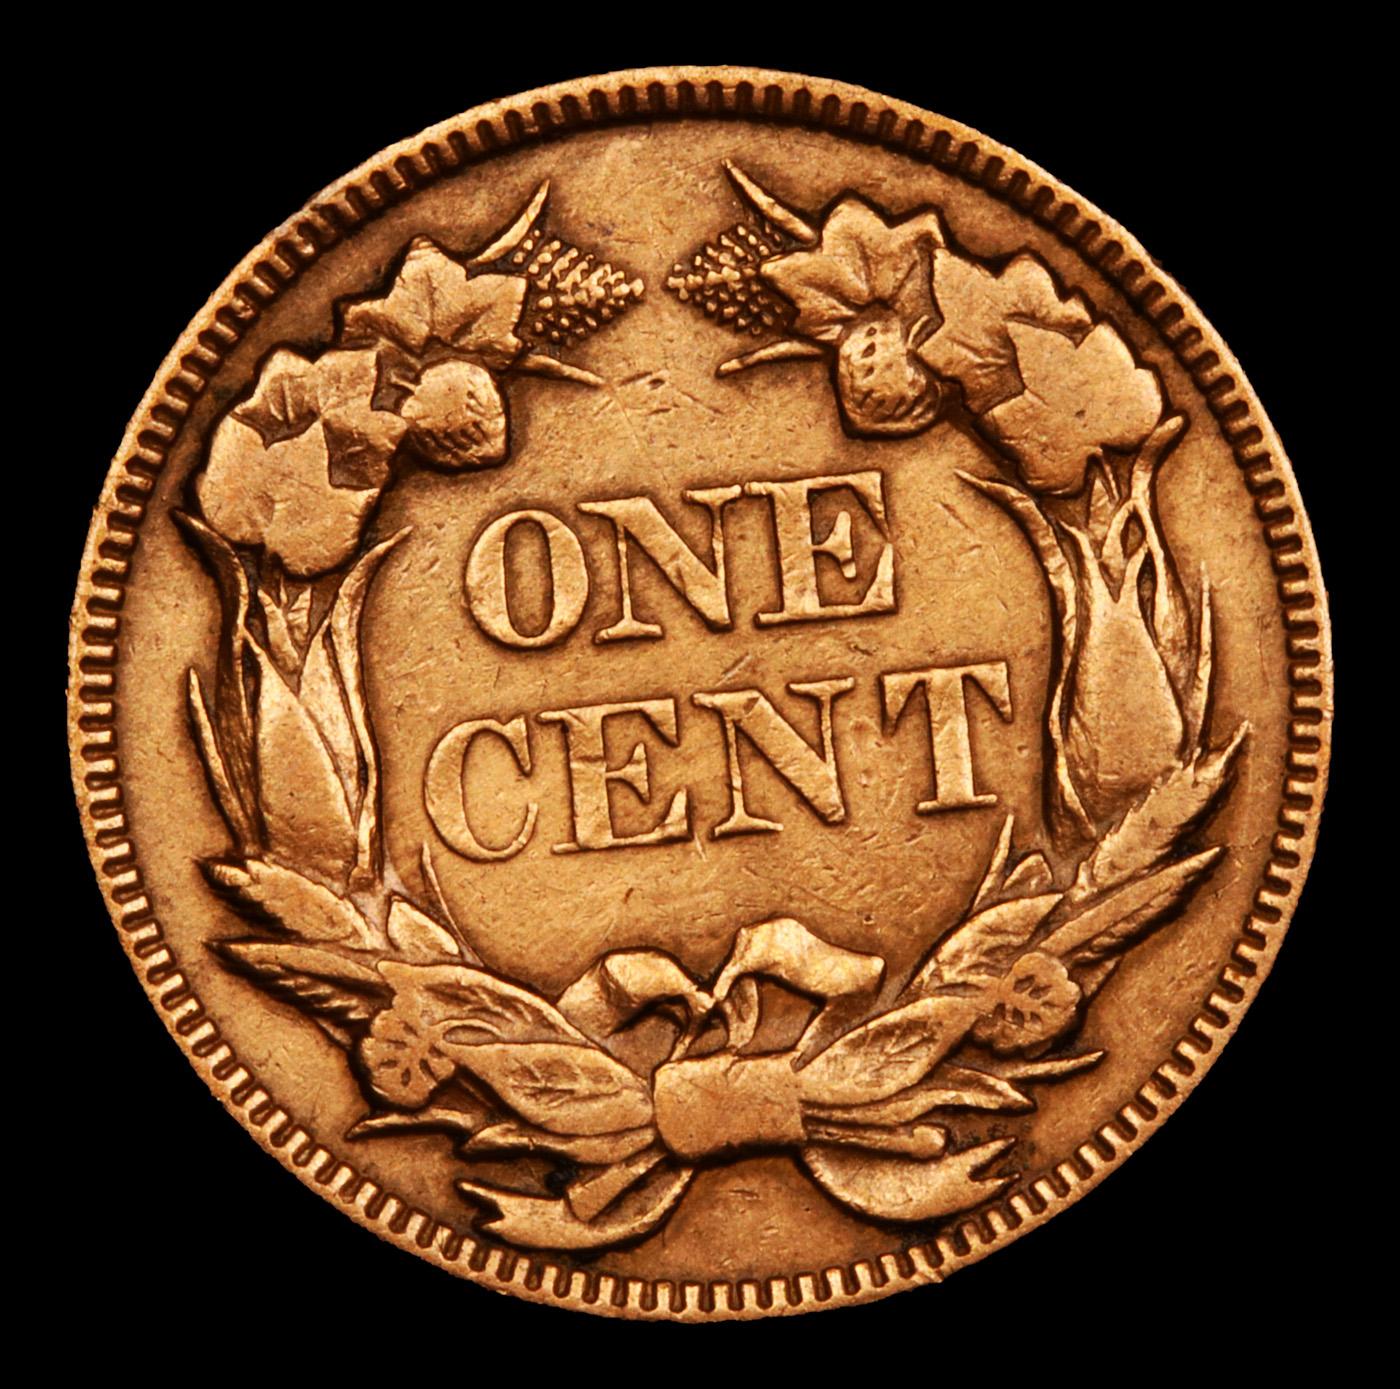 1857 Flying Eagle Cent 1c Grades vf+ details